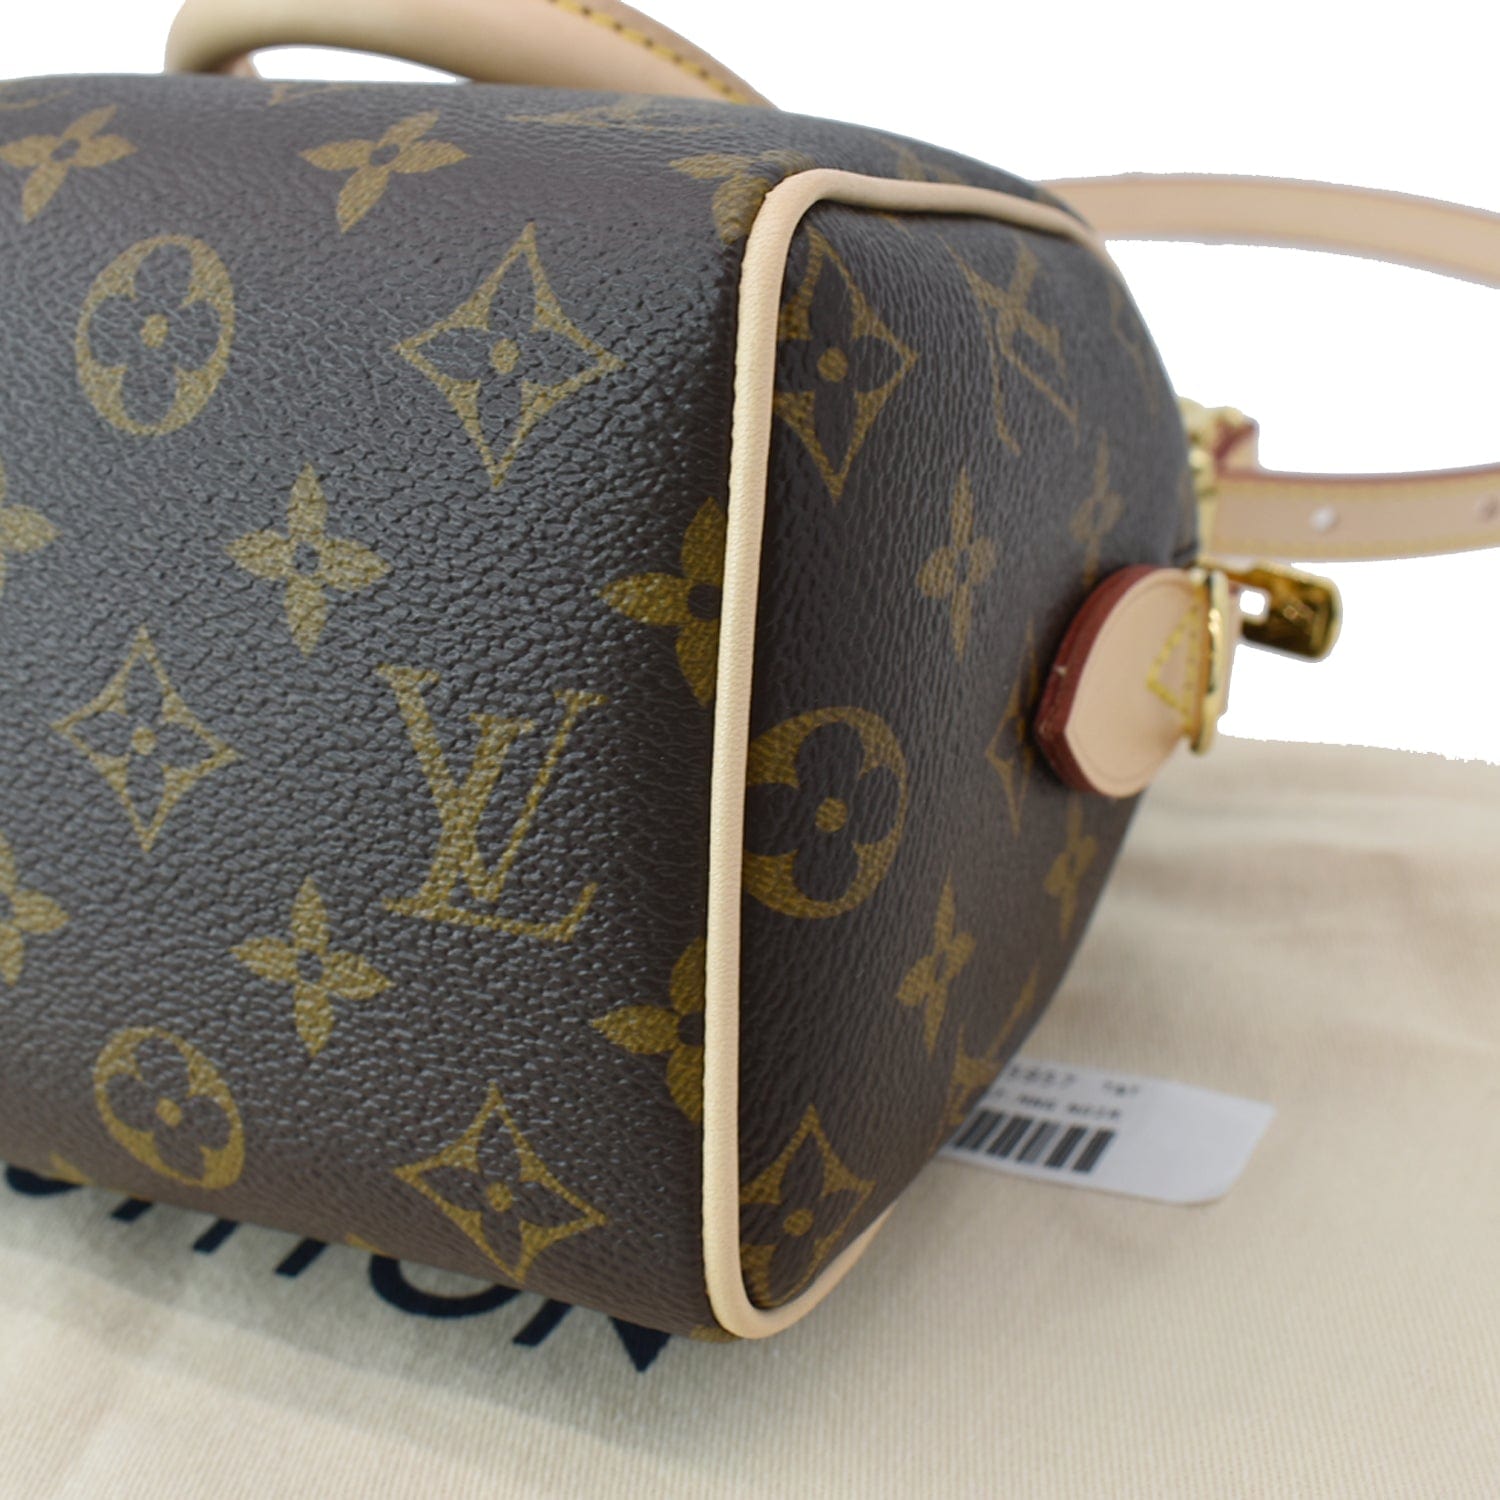 Louis Vuitton e Monogram Canvas Cross Body Bag – Bag Addictions